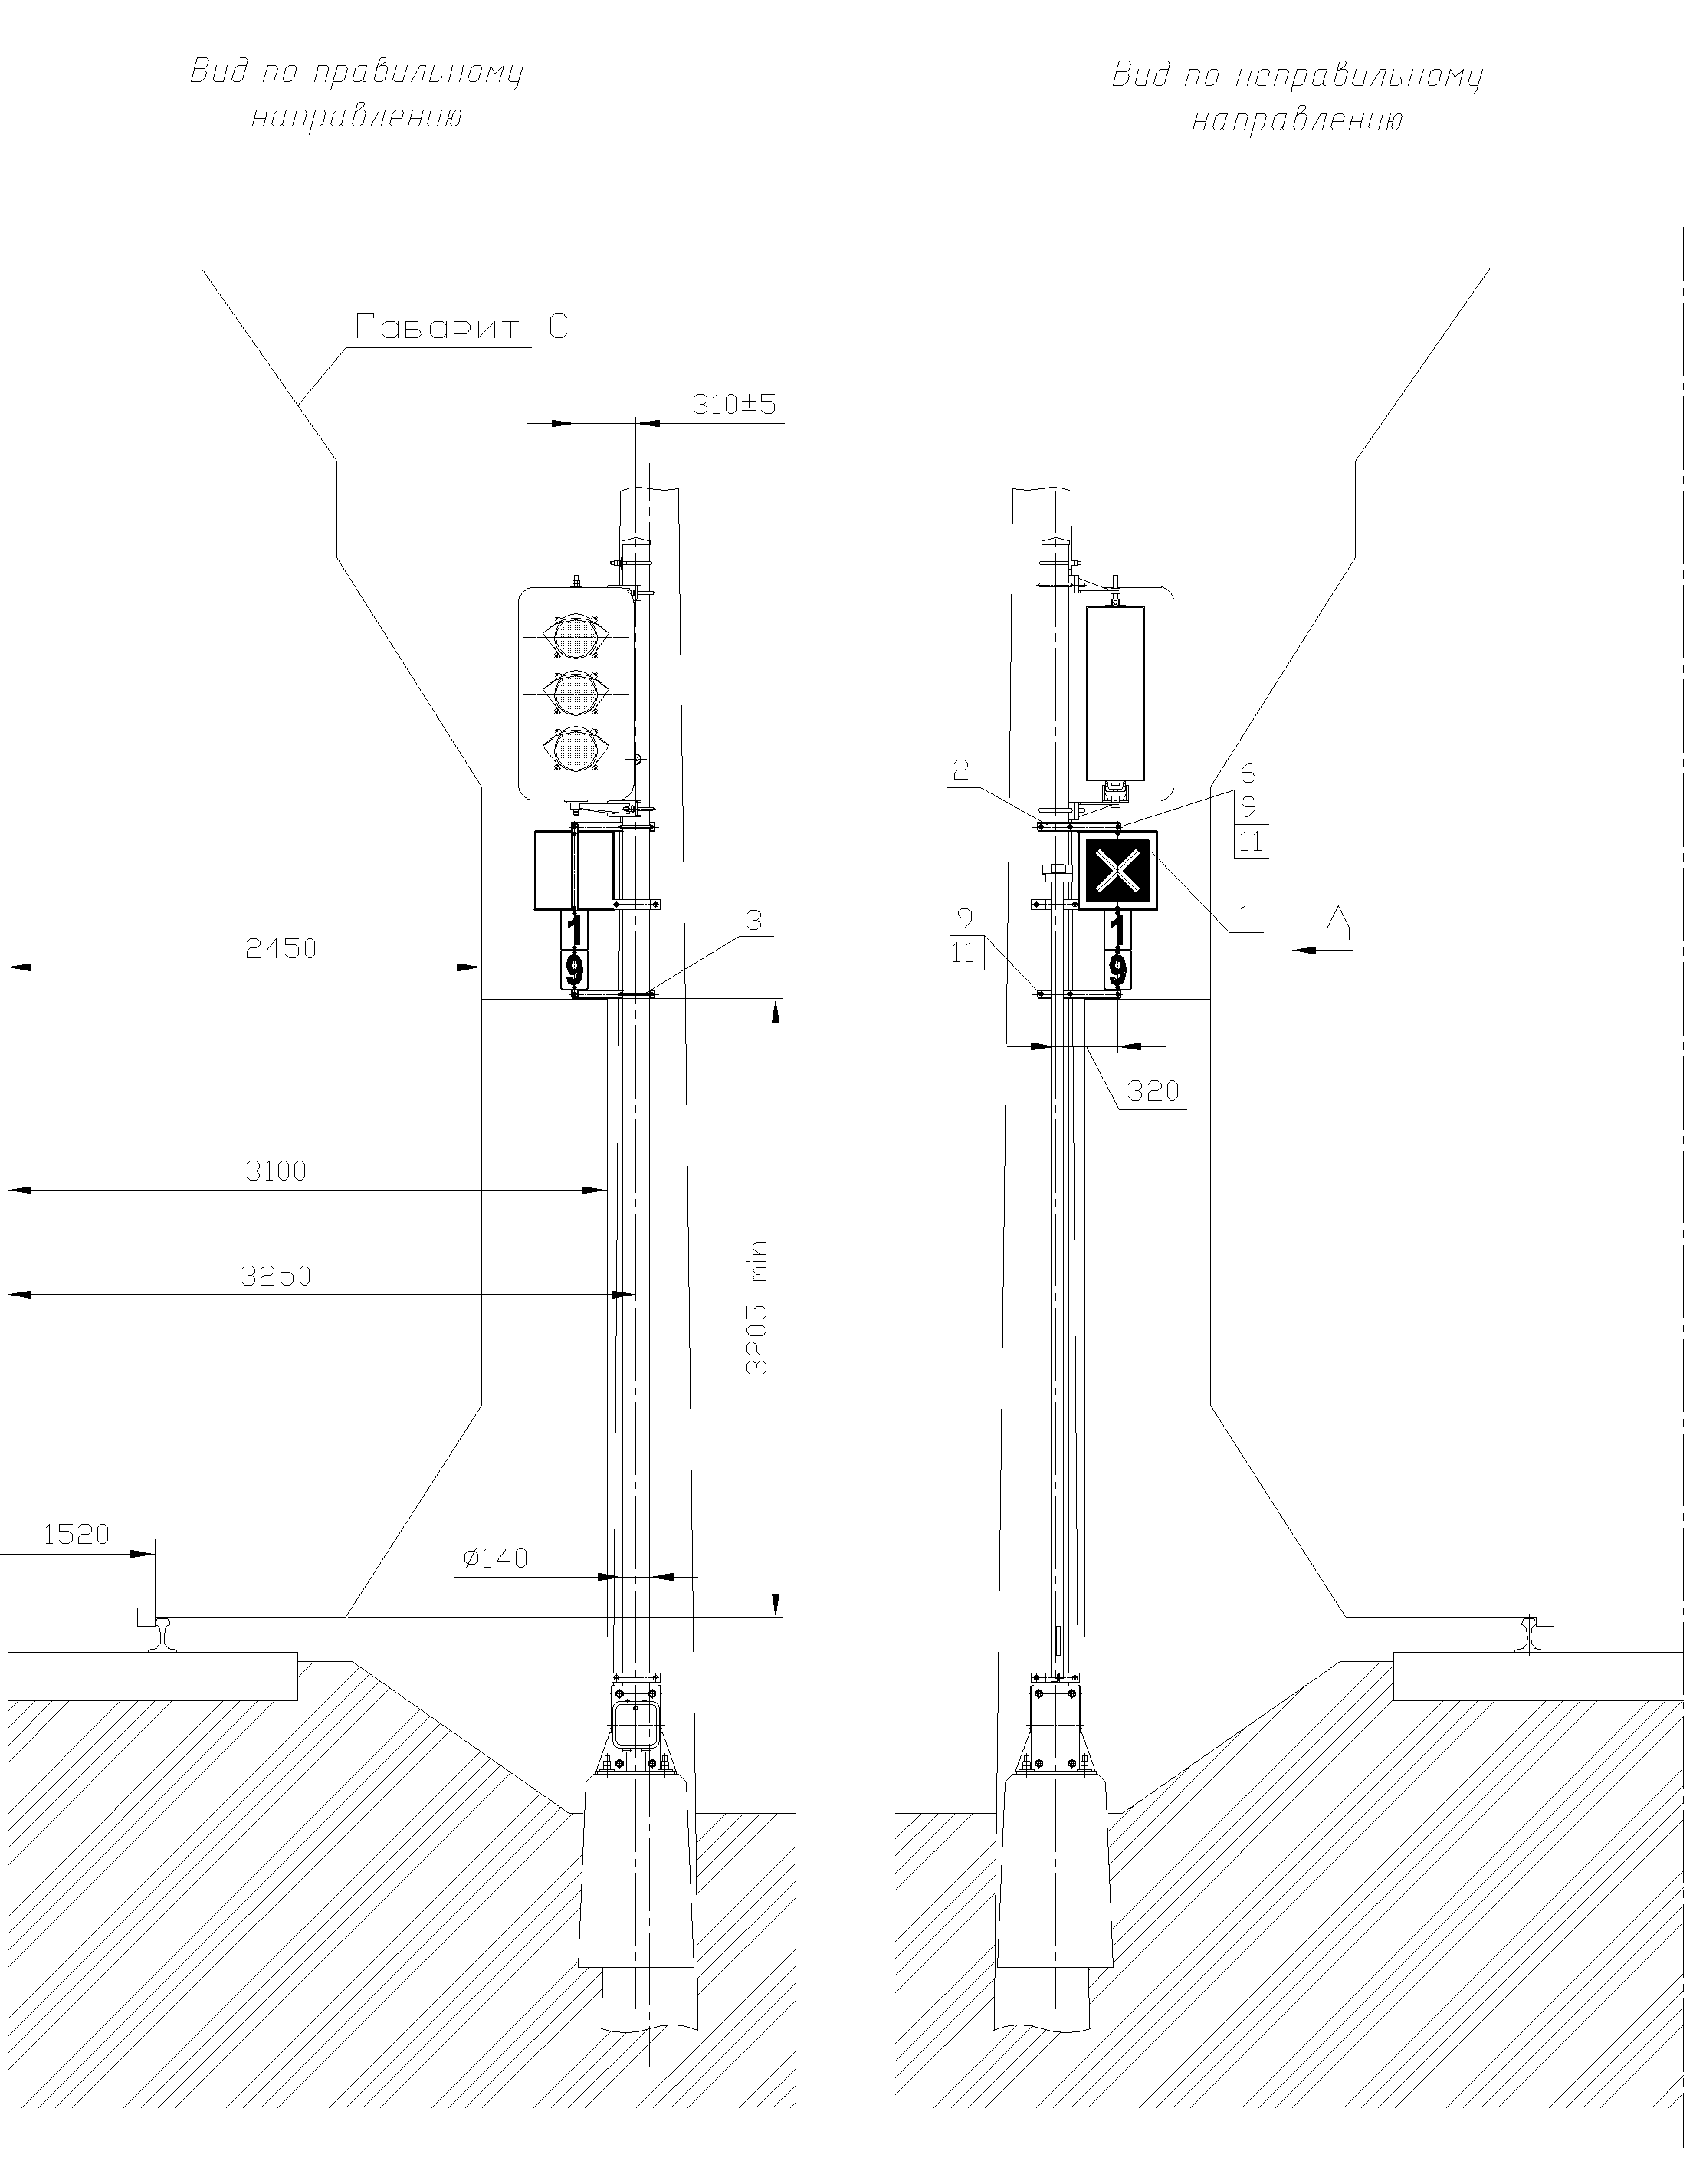 Рисунок 79. Вариант 1 крепления знака Перенос границы блок-участка на мачте светофора